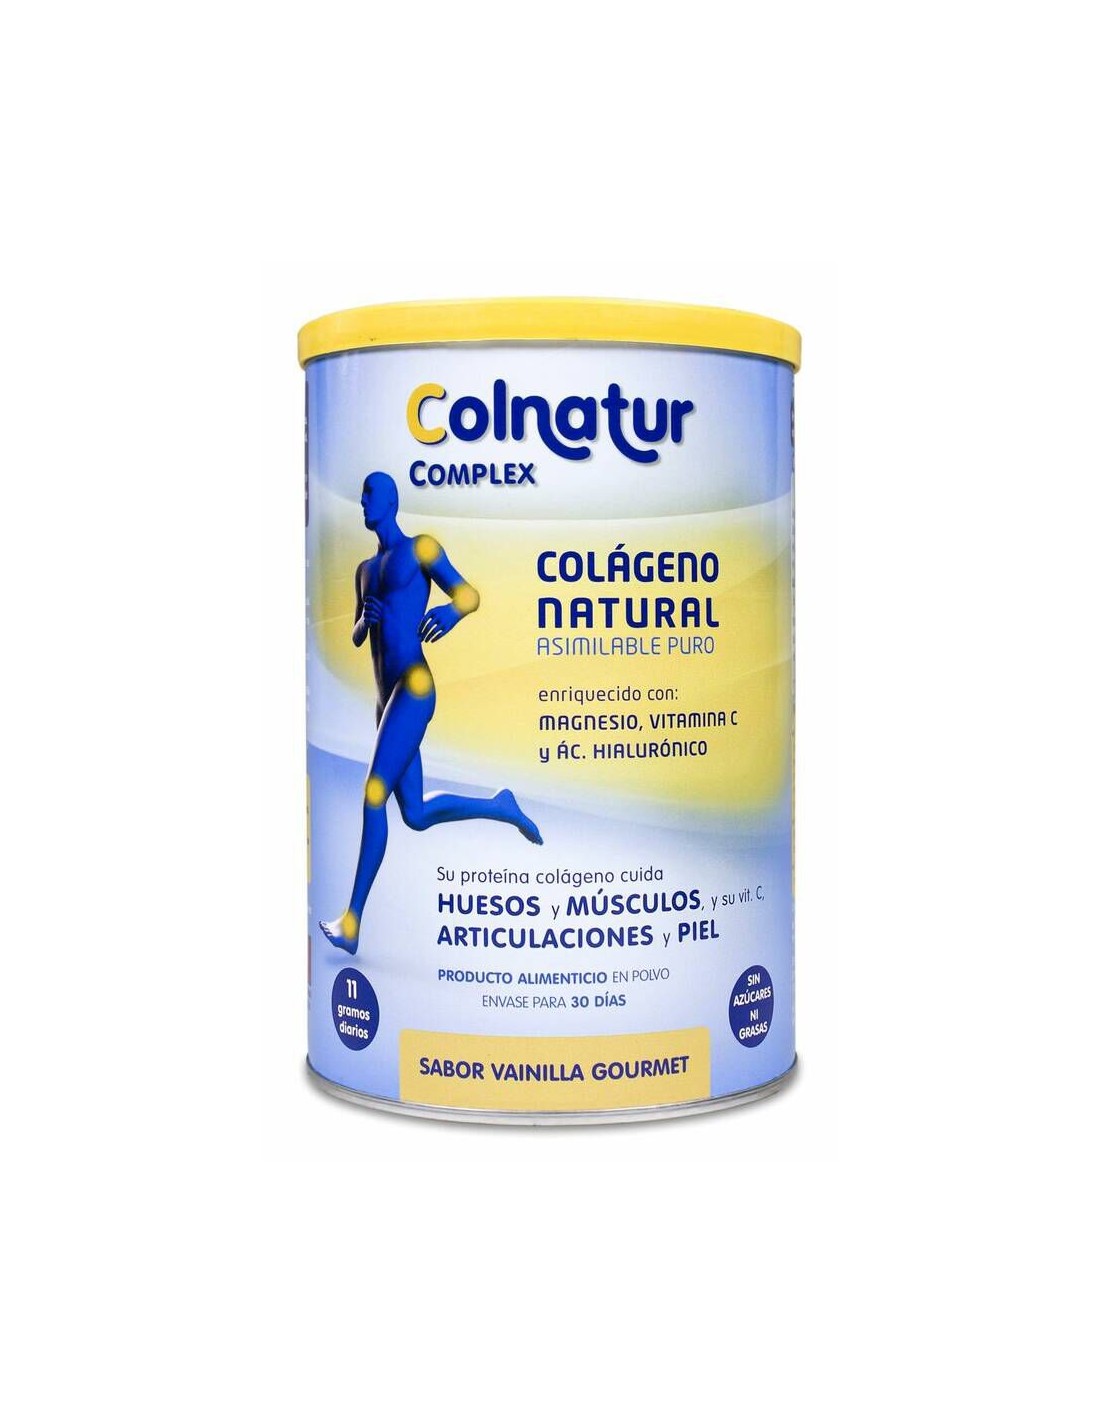 Colnatur Complex sabor neutro 330g